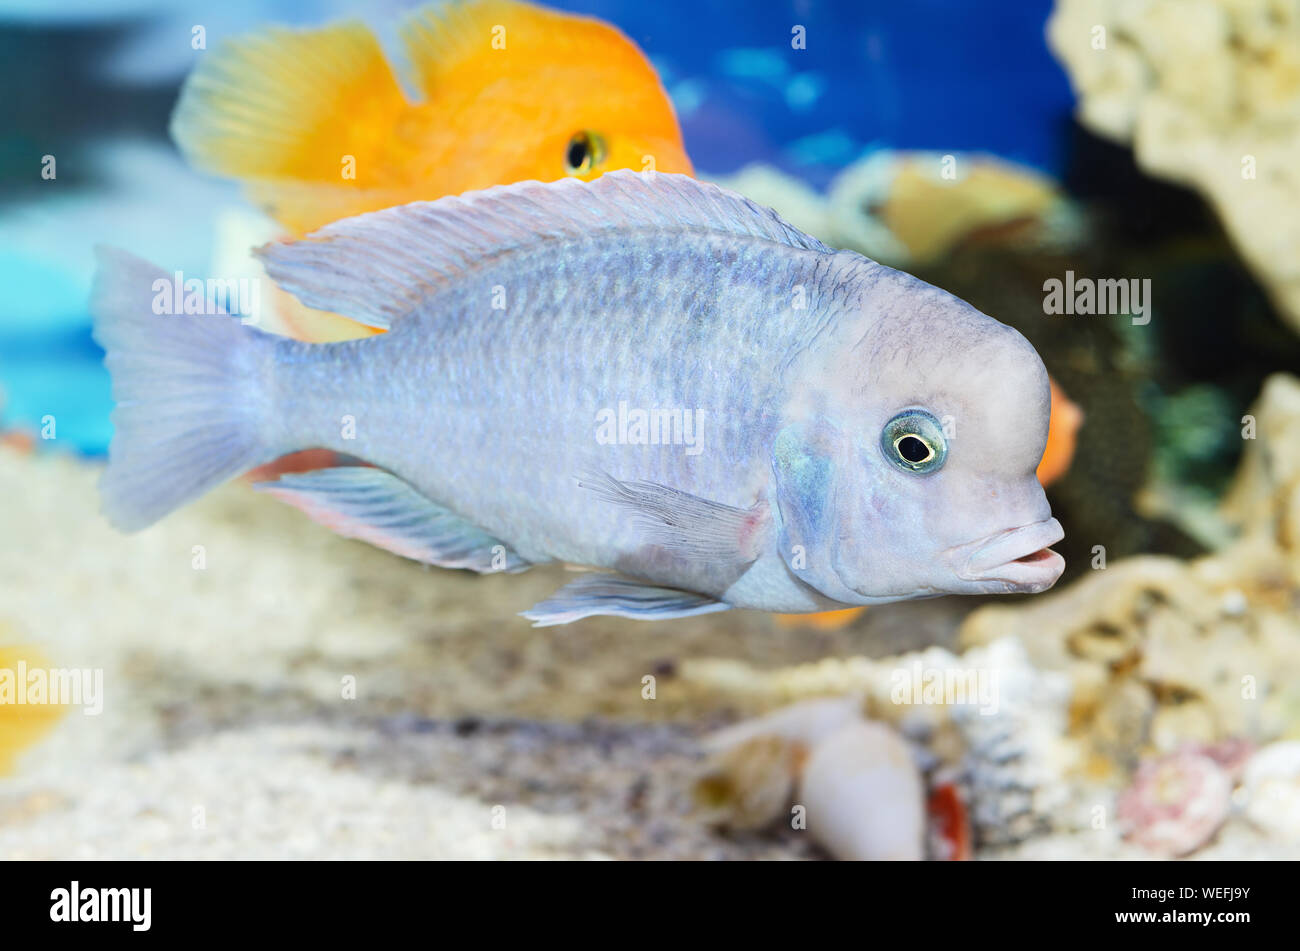 Beautiful blue fish swim in the aquarium. Selective focus Stock Photo